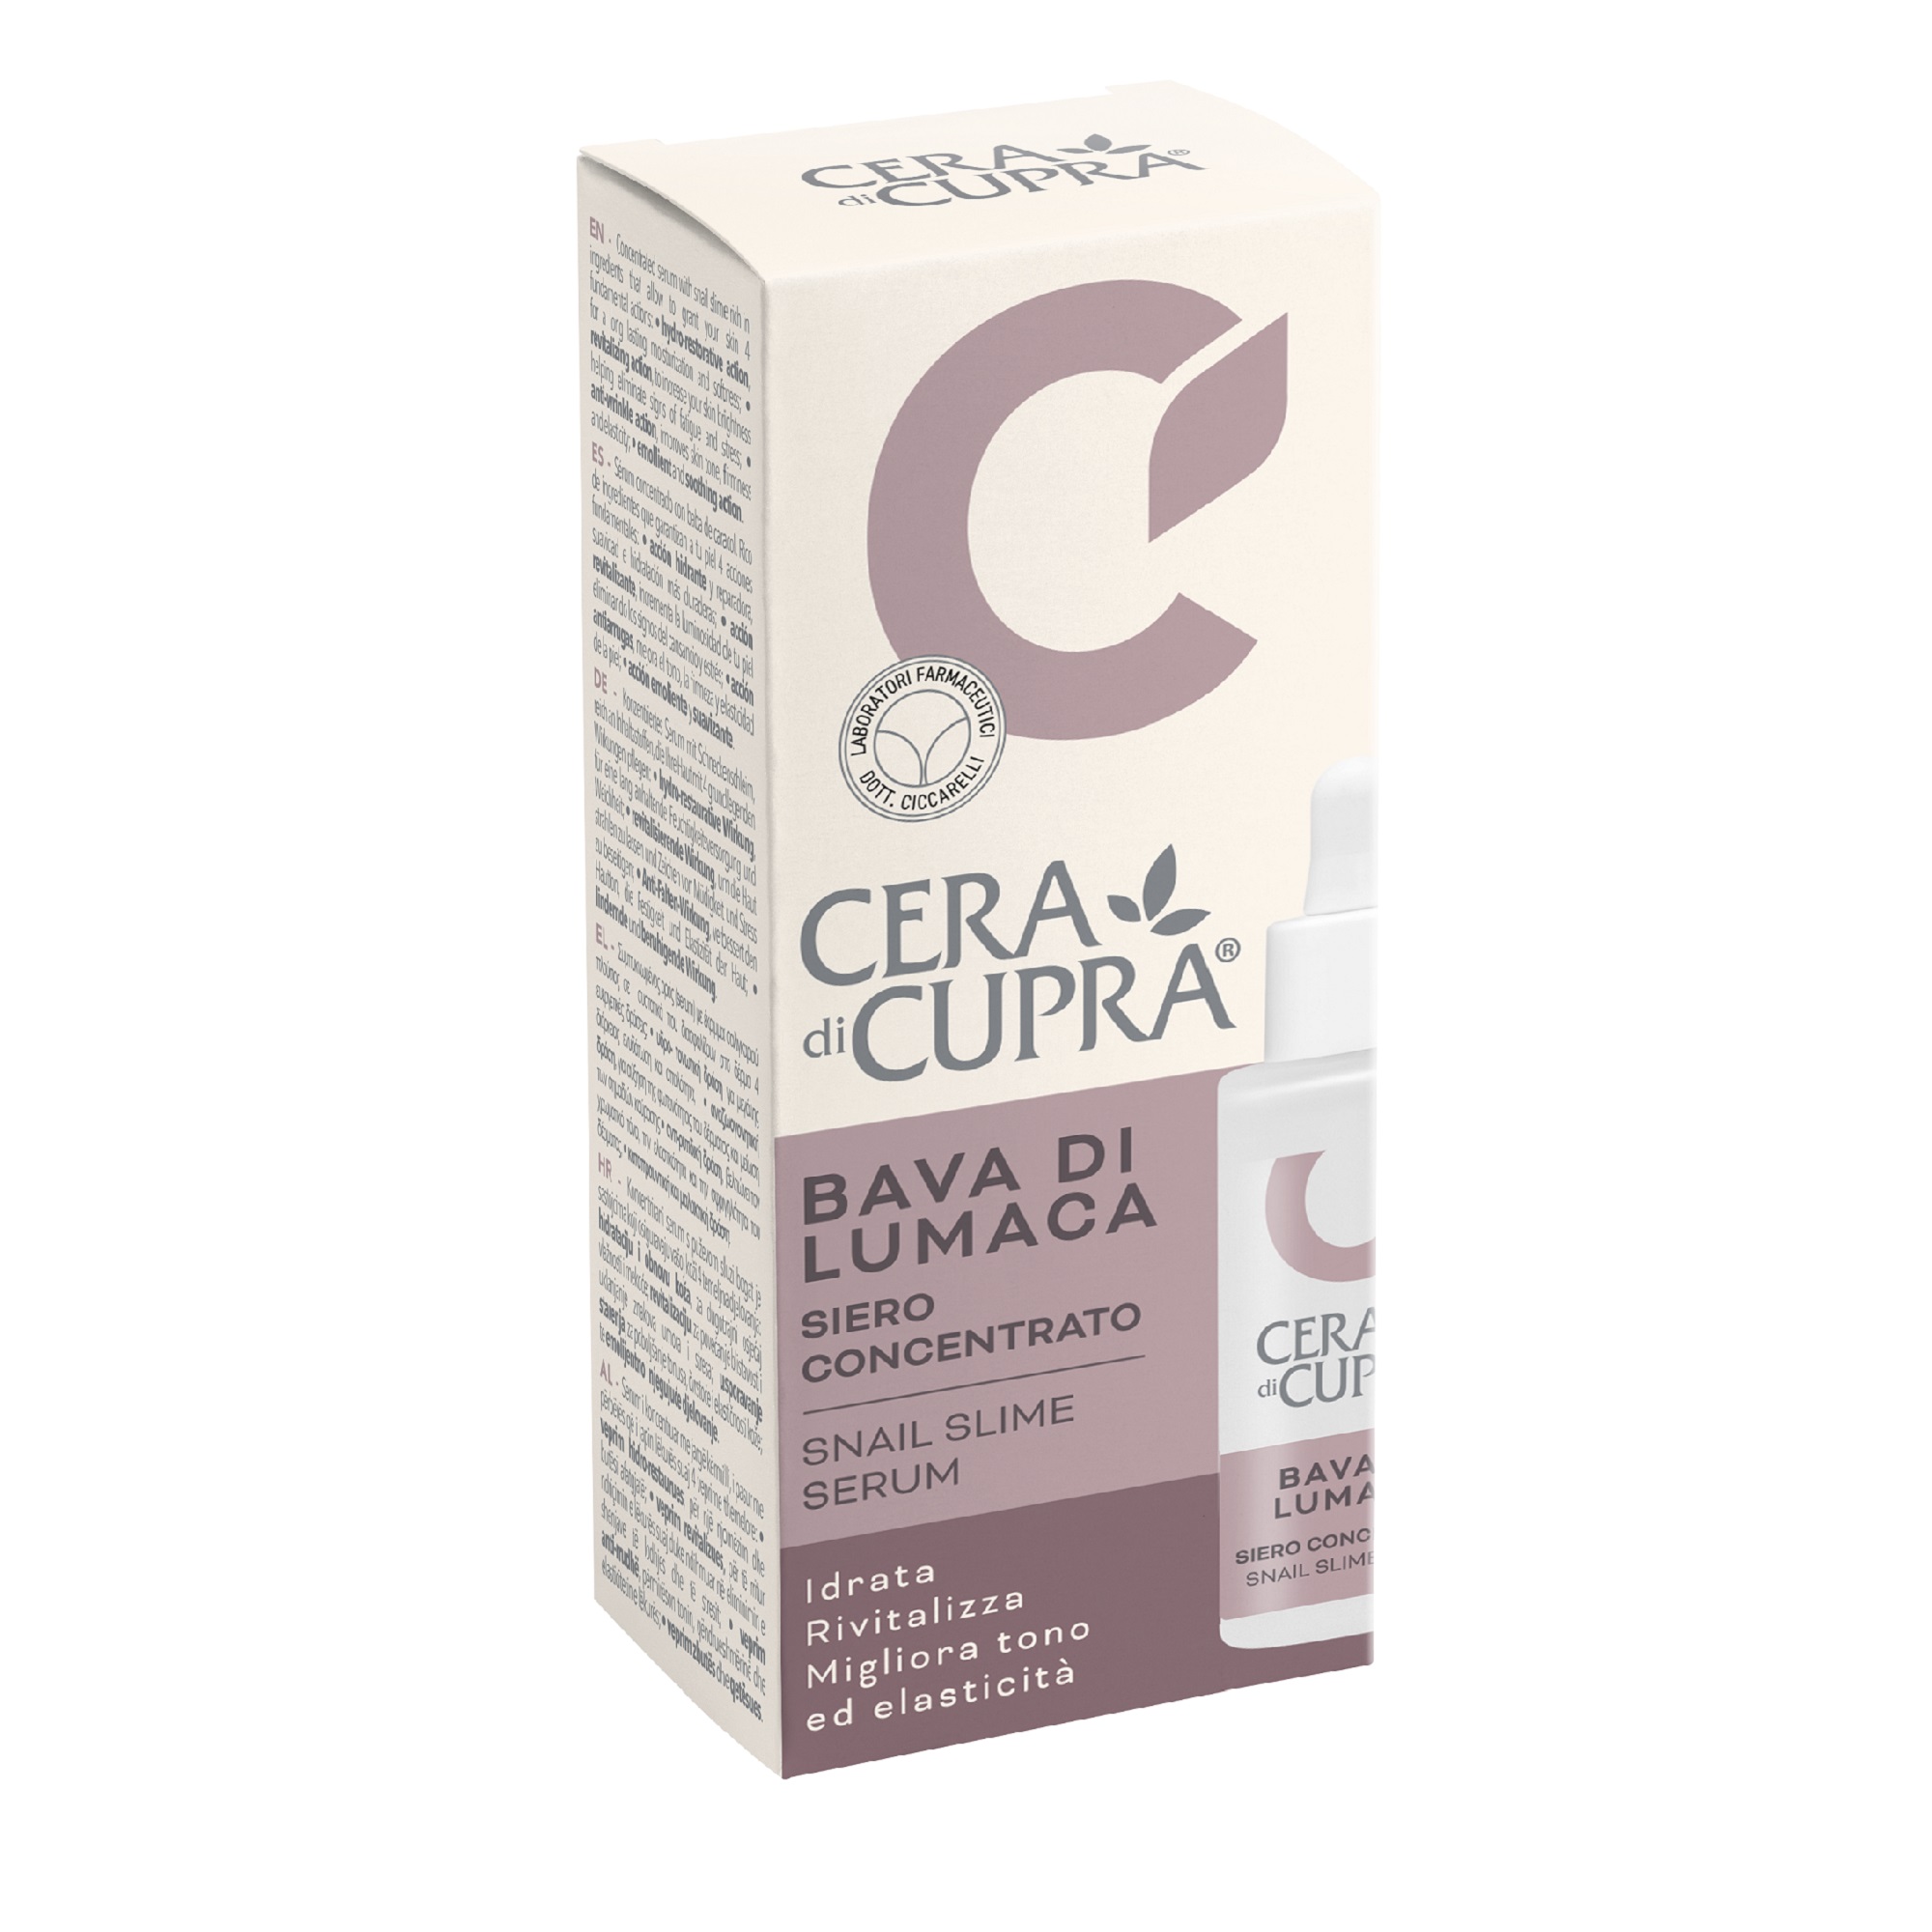 Сыворотка для лица Cera di Cupra C МУЦИНОМ УЛИТКИ 30 мл сыворотка cica для лица супервосстановление 30мл